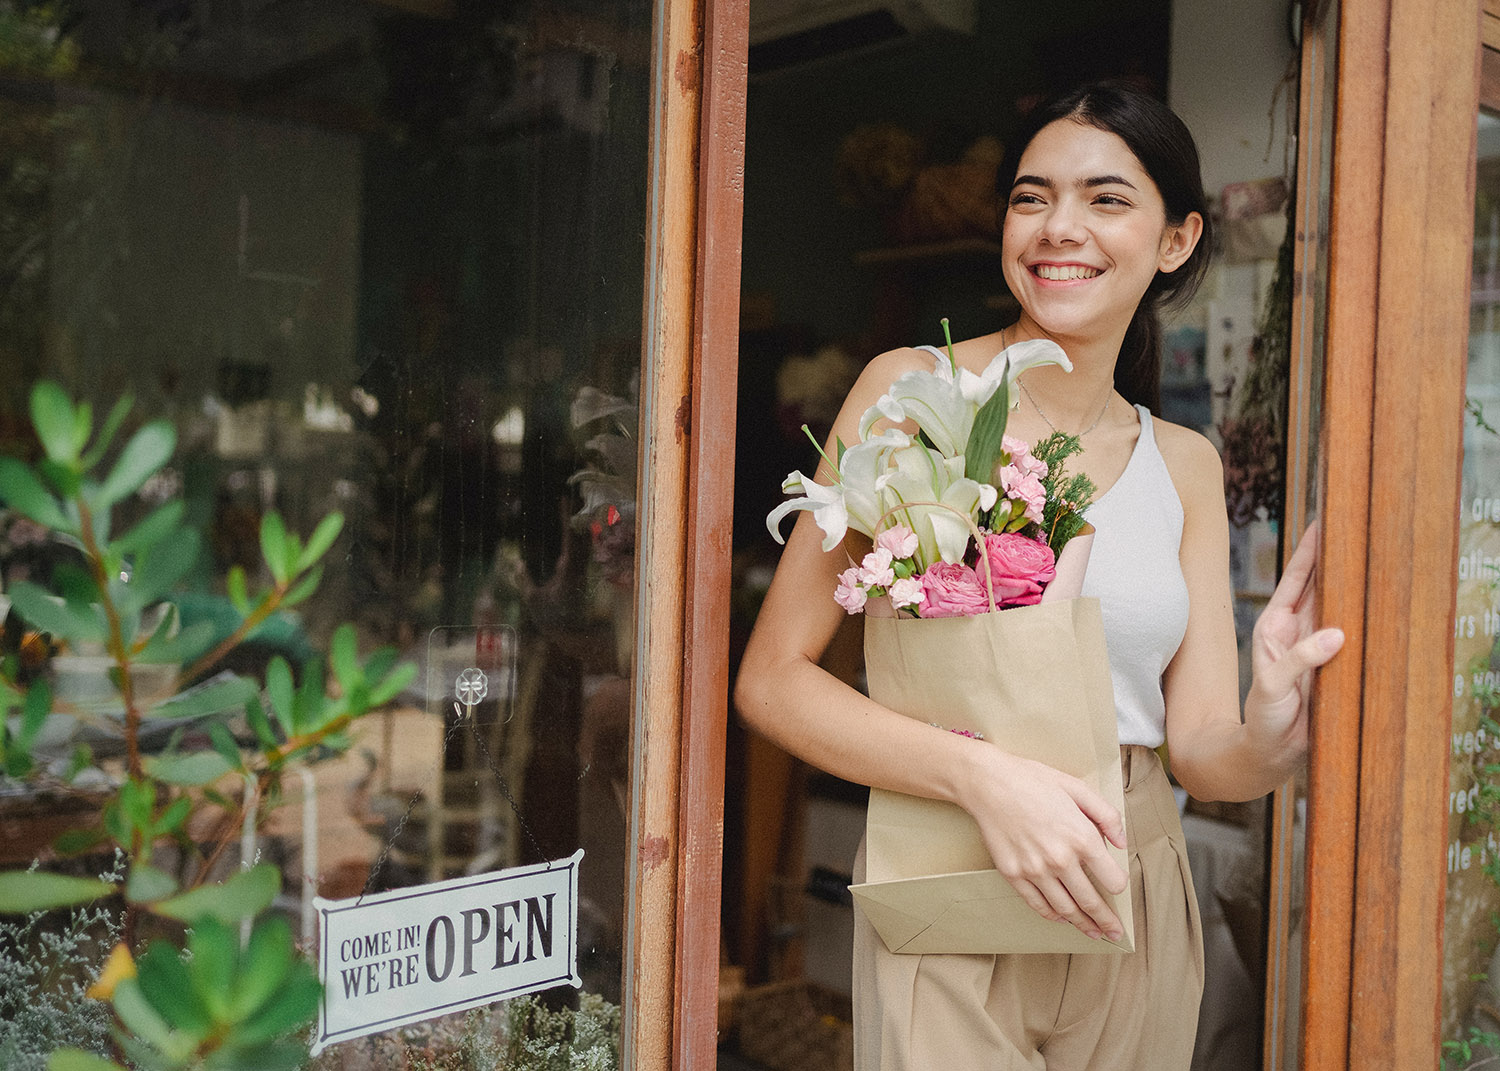 Une femme dans l'entrée d'une boutique tient un bouquet